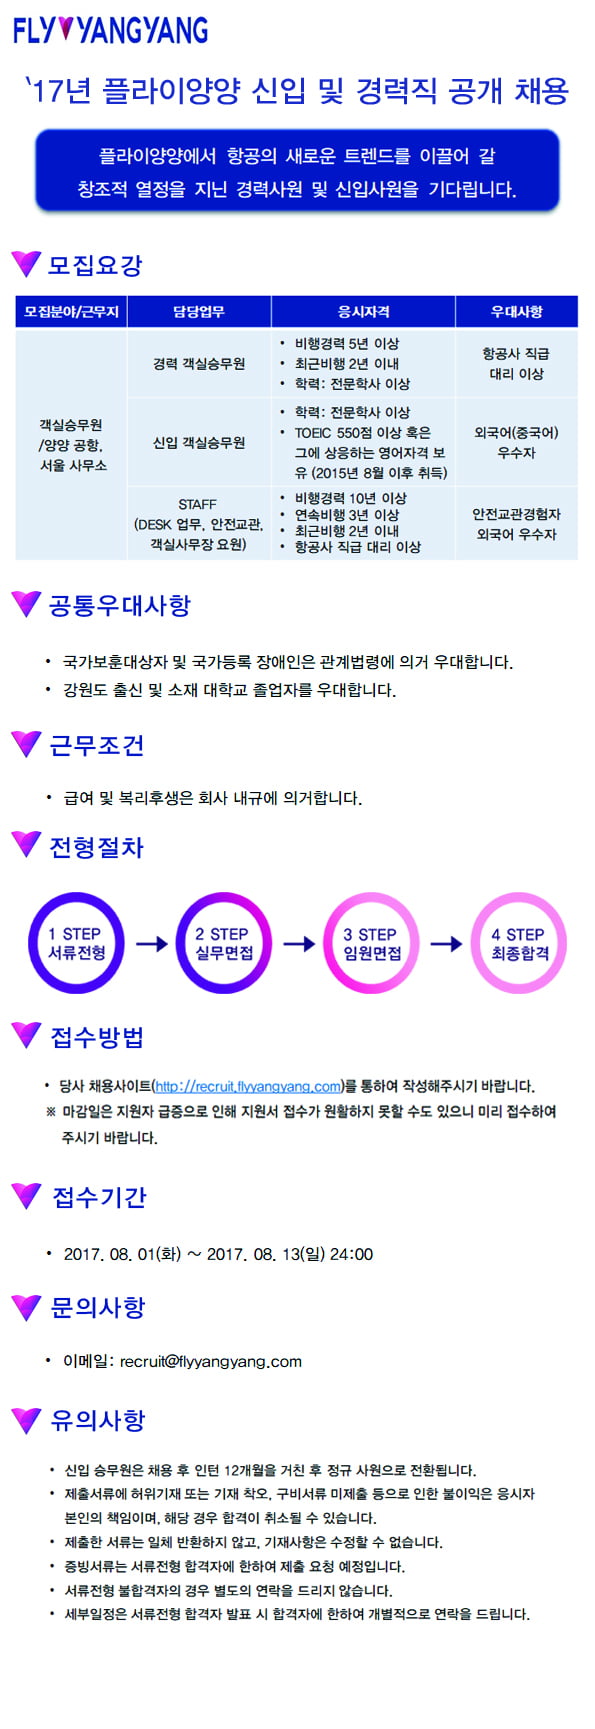 ‘신규 저가항공’ 플라이양양, 일반직·객실 승무원 등 13일까지 공채 서류 접수